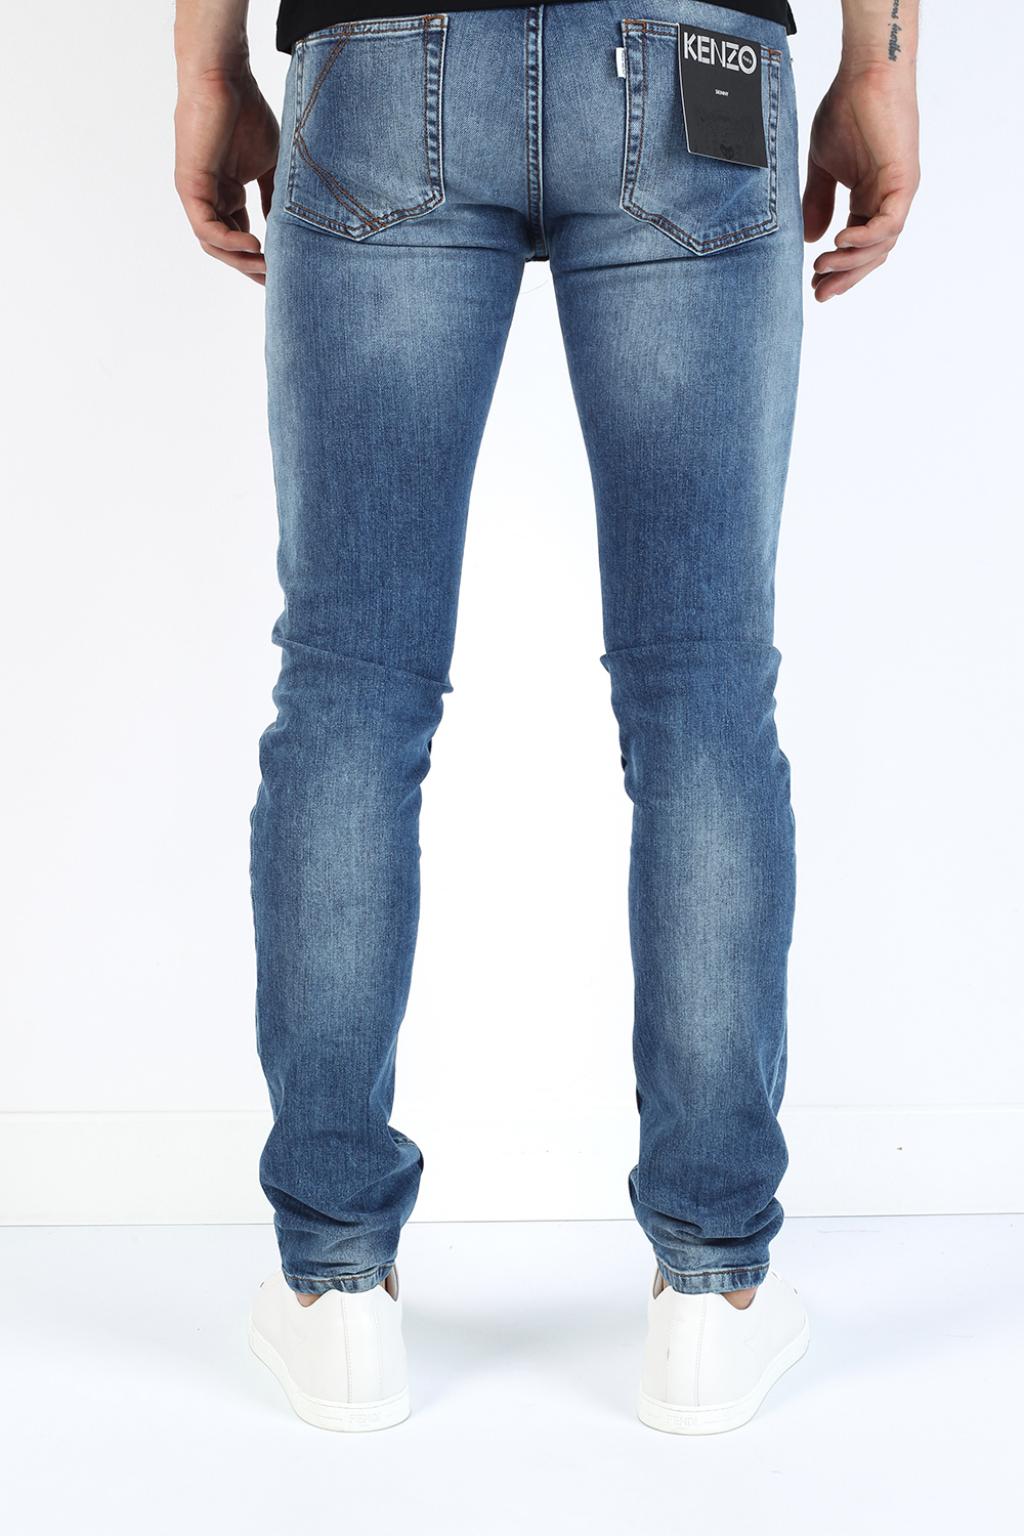 kenzo skinny jeans